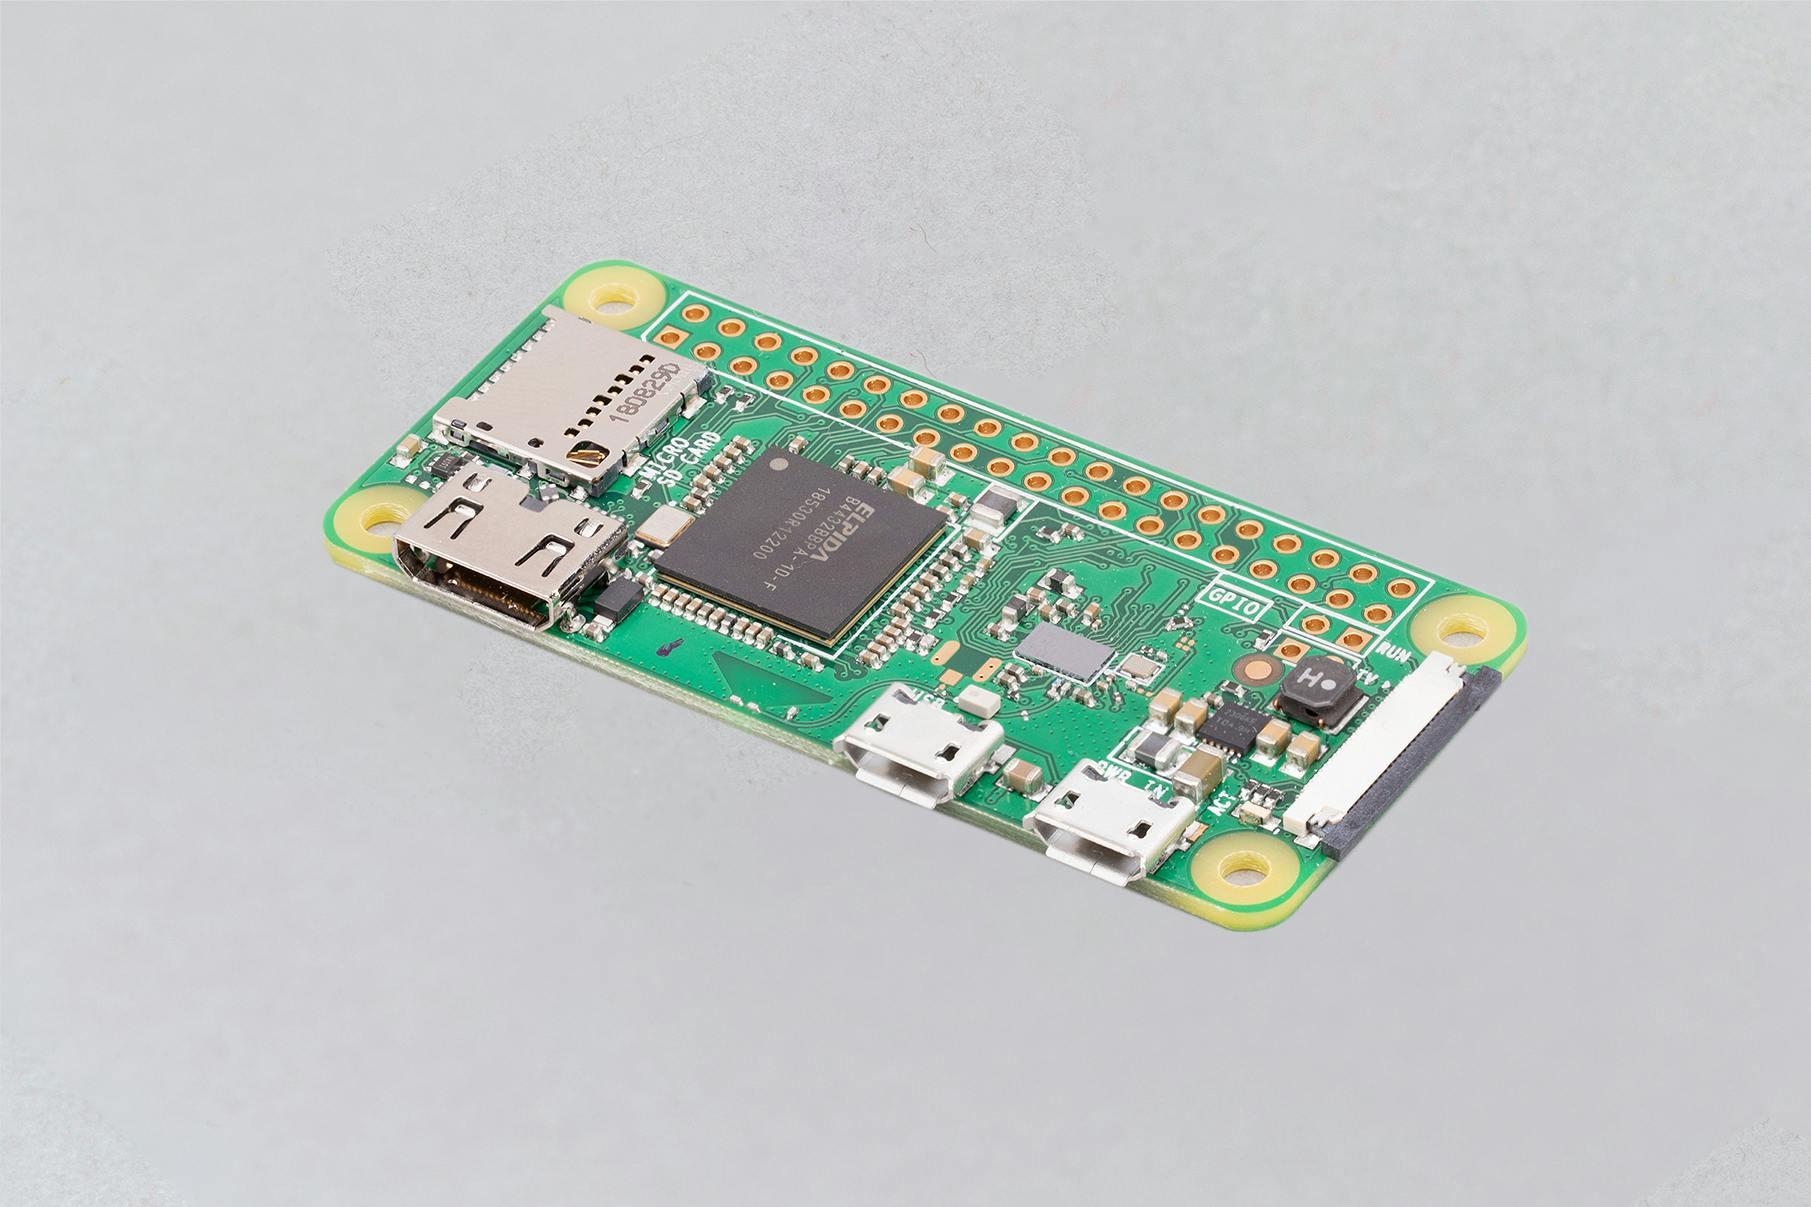 Product: Buy a Raspberry Pi Zero W – Raspberry Pi